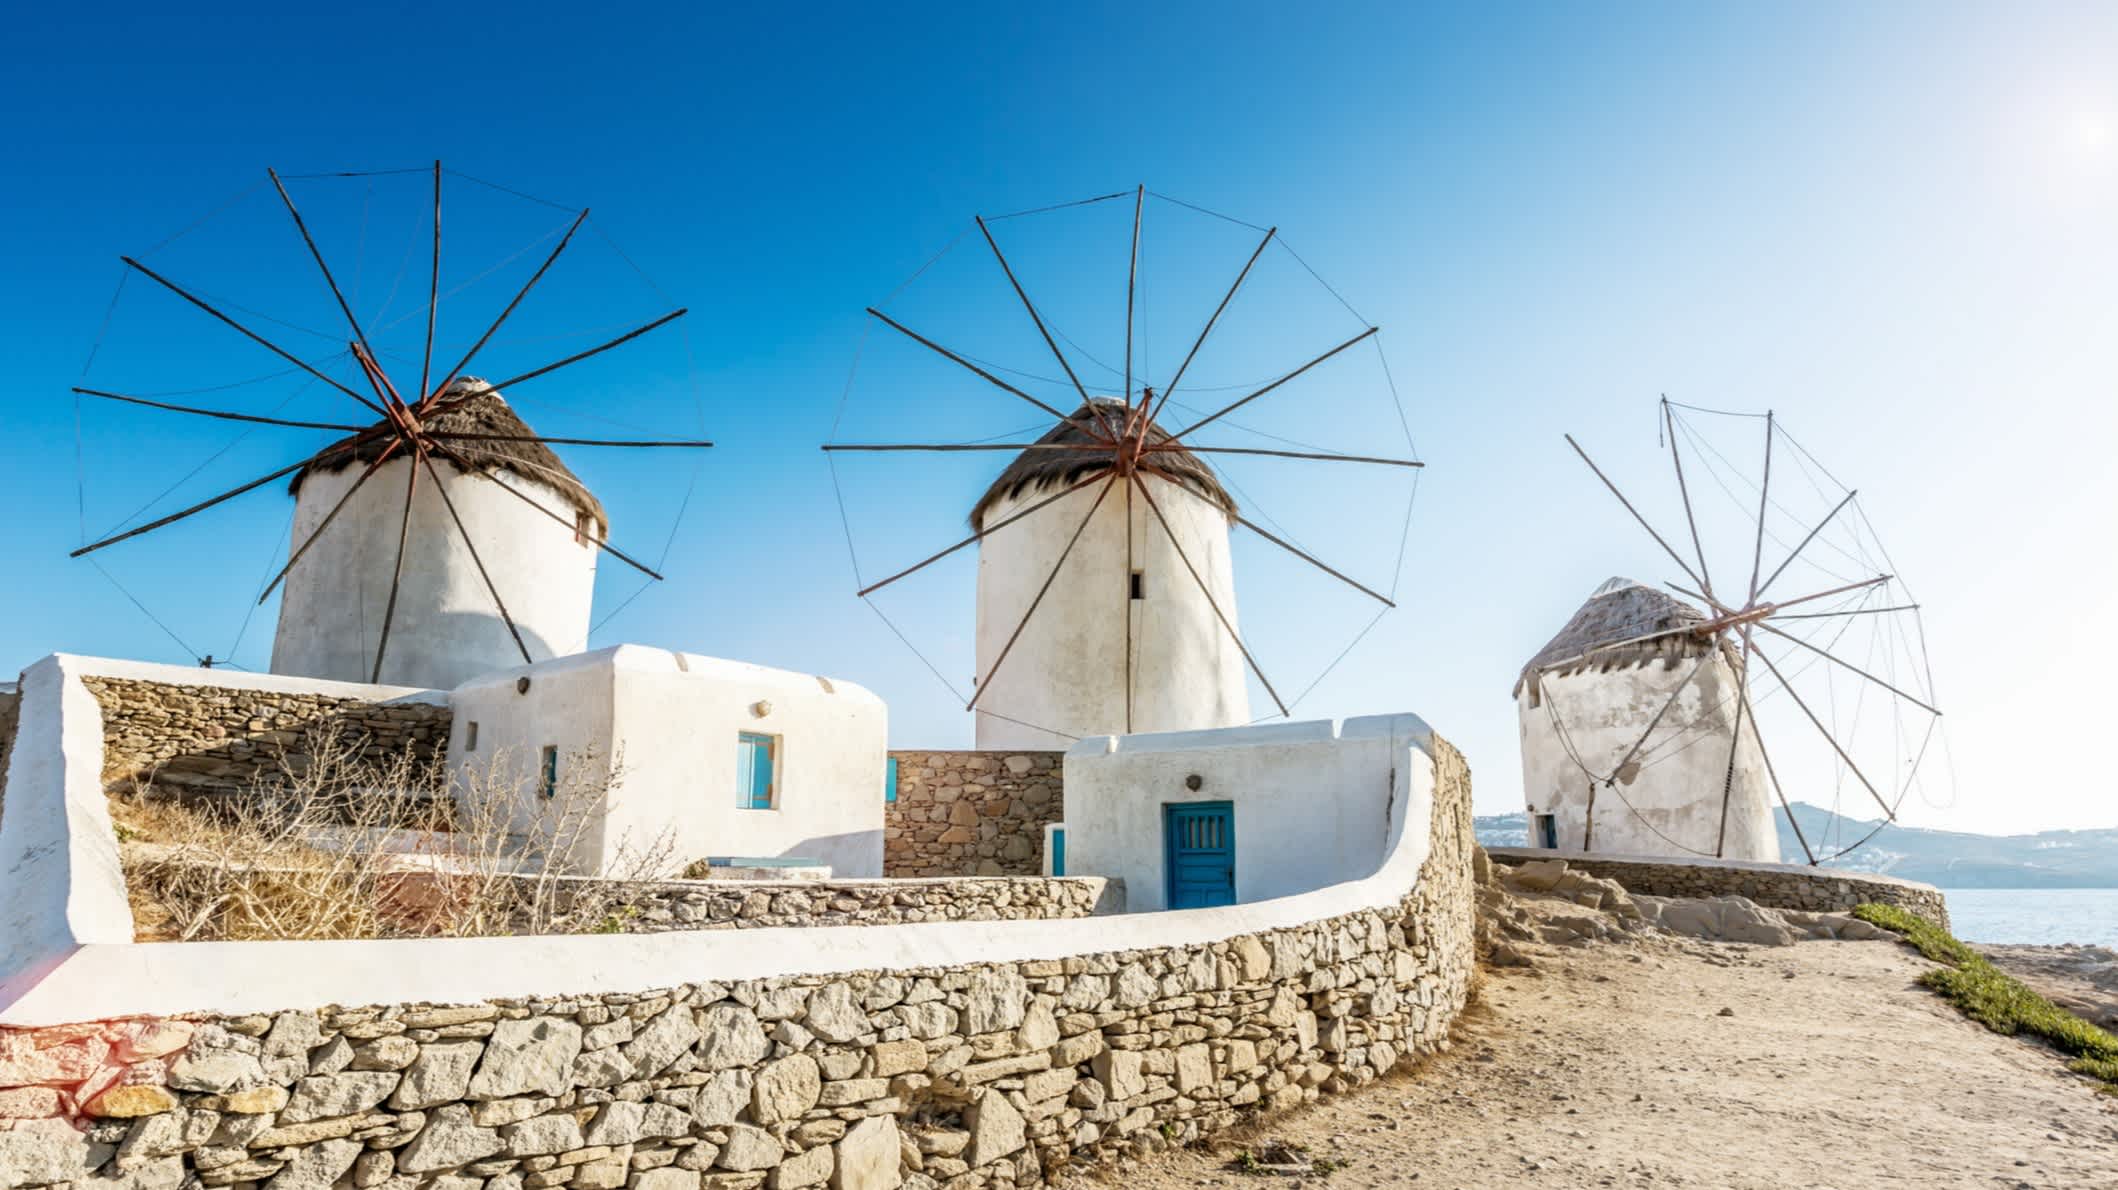 Windmühlen in Mykonos, Griechenland